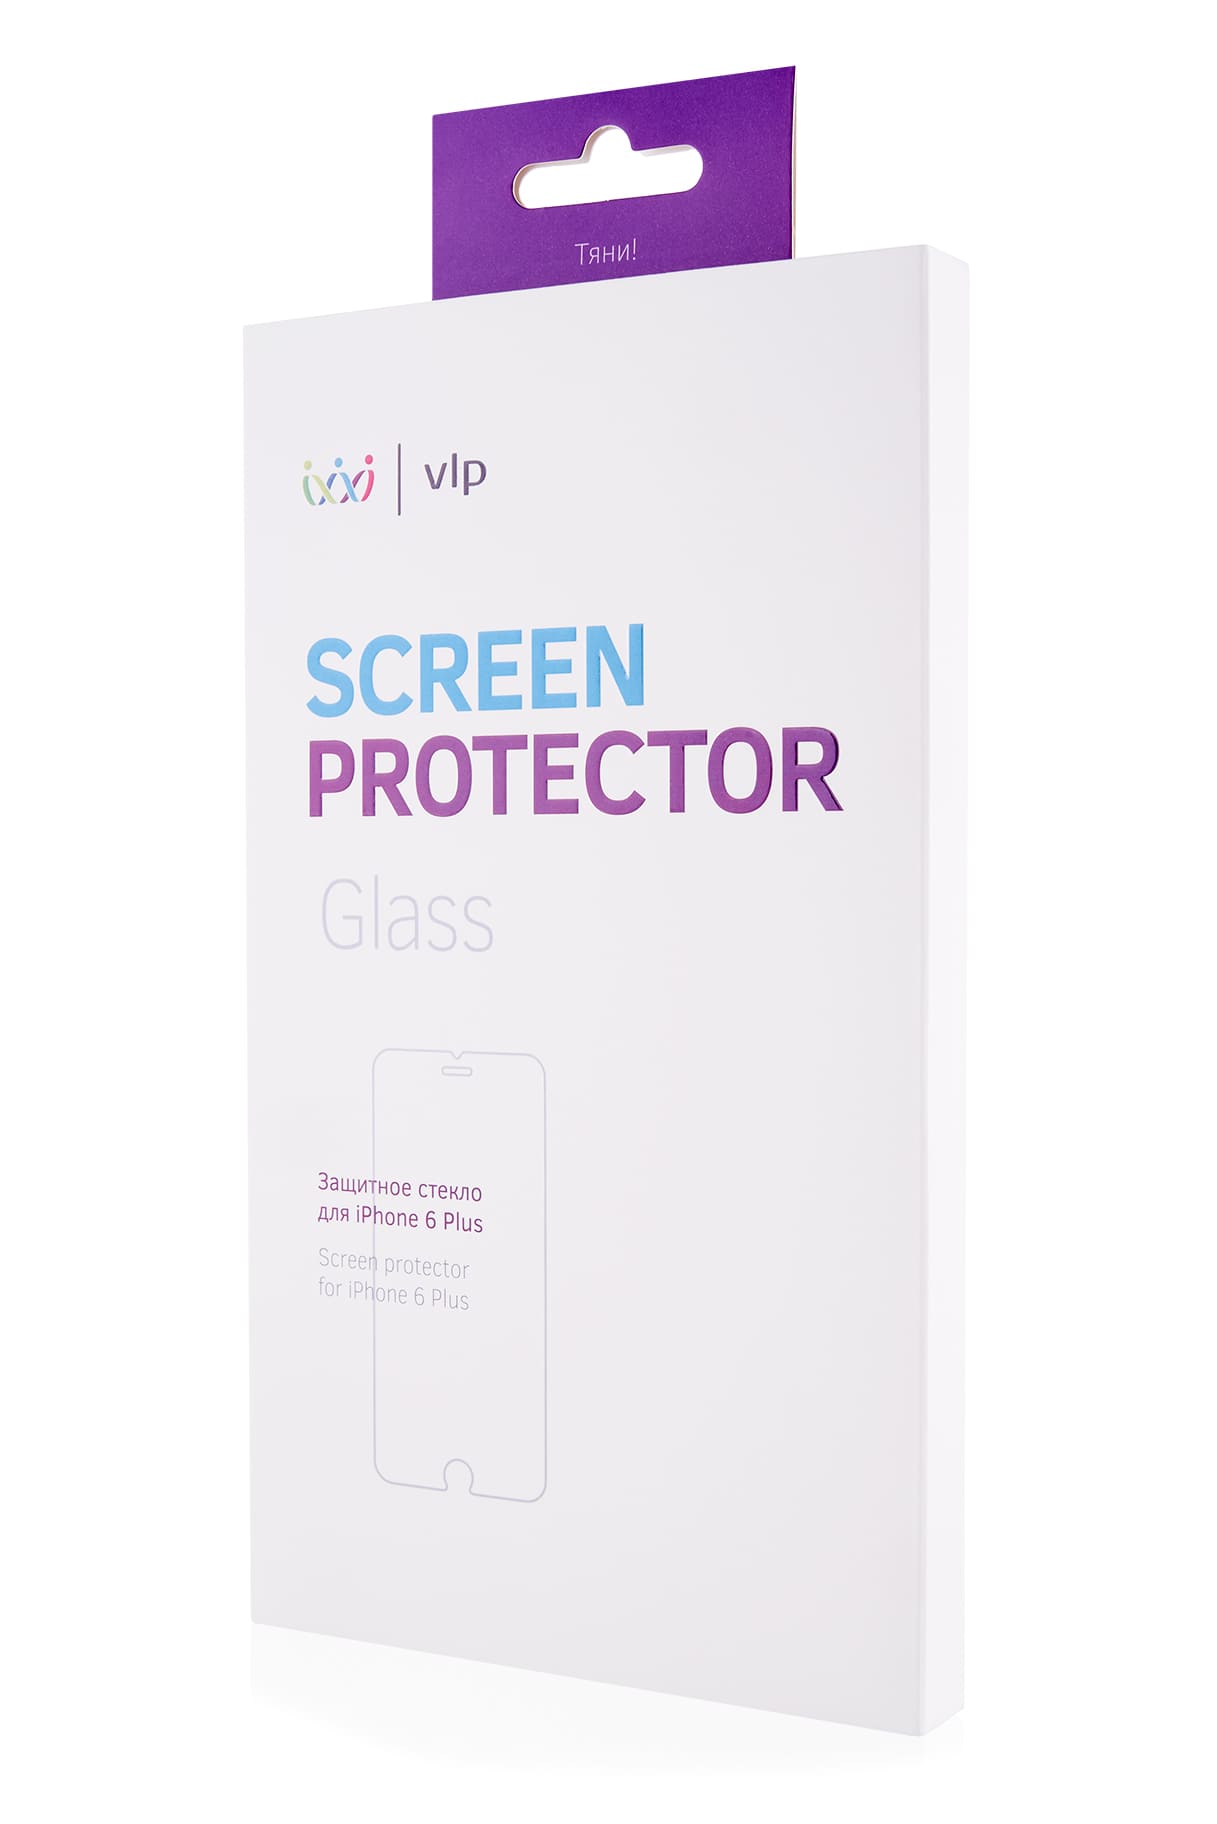 Защитное стекло для смартфона vlp для iPhone 6 Plus, олеофобное